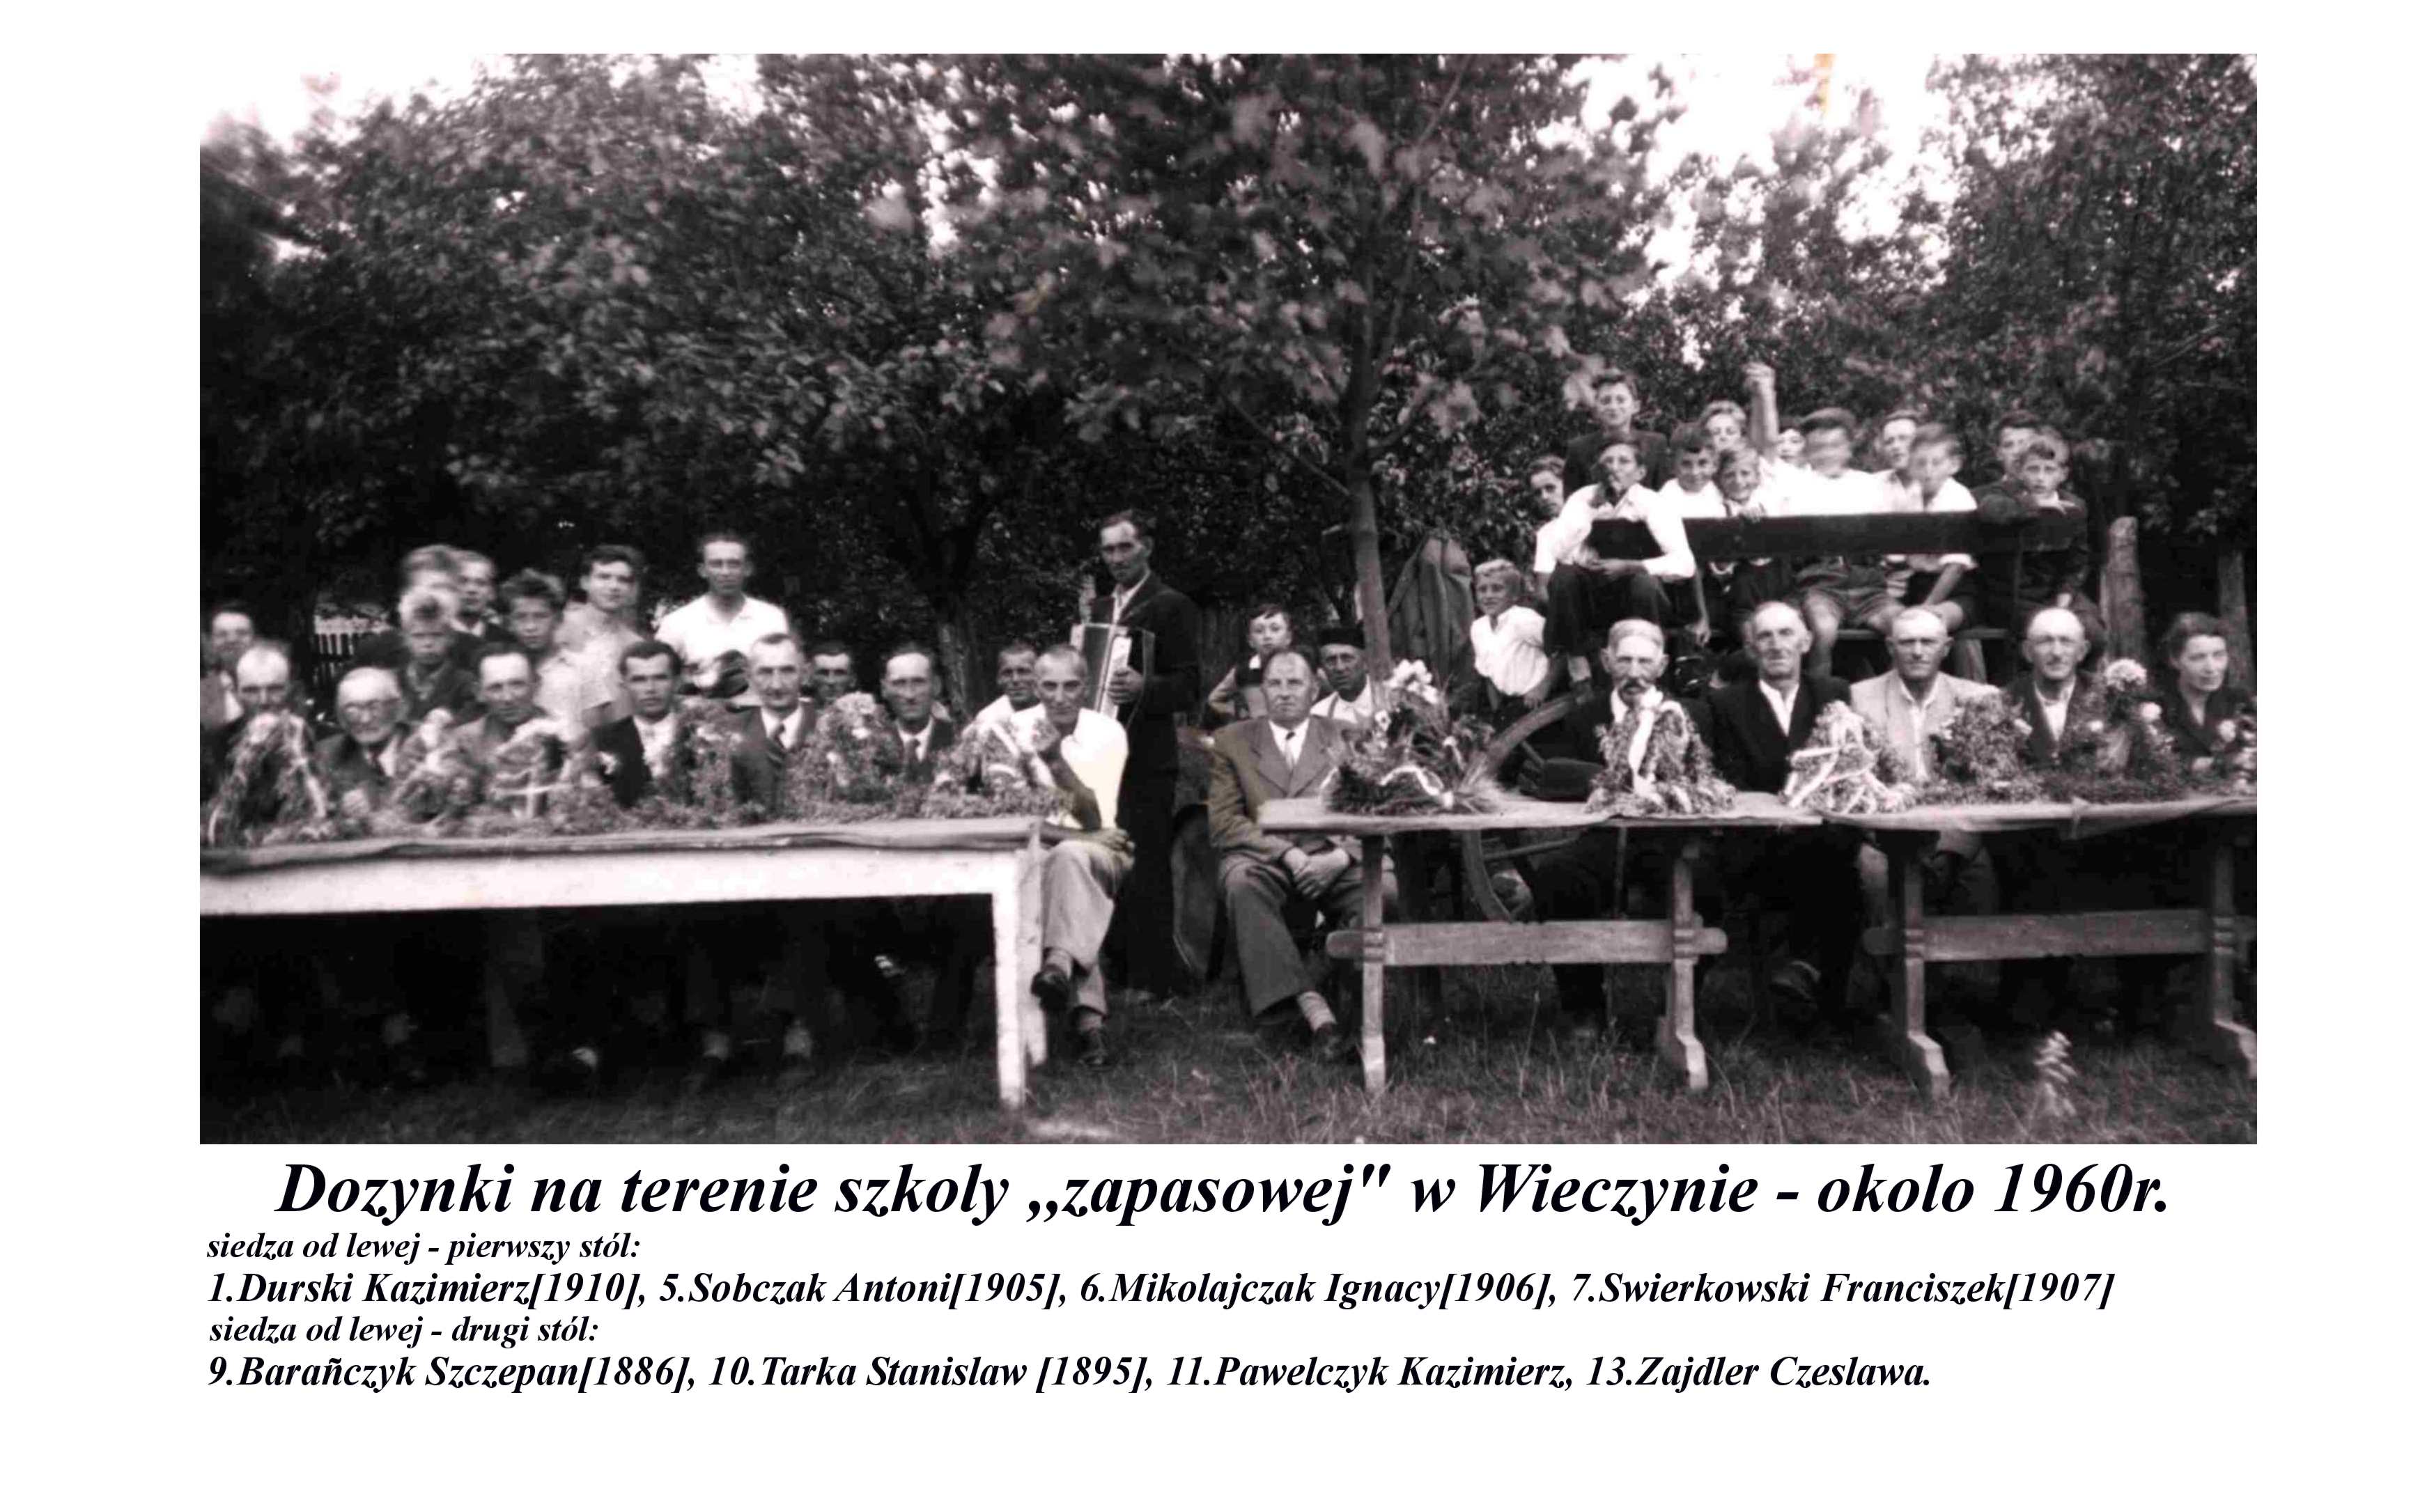 kronika wieczyna - aalc83-Dożynki w Wieczynie - okolo 1960r.jpg